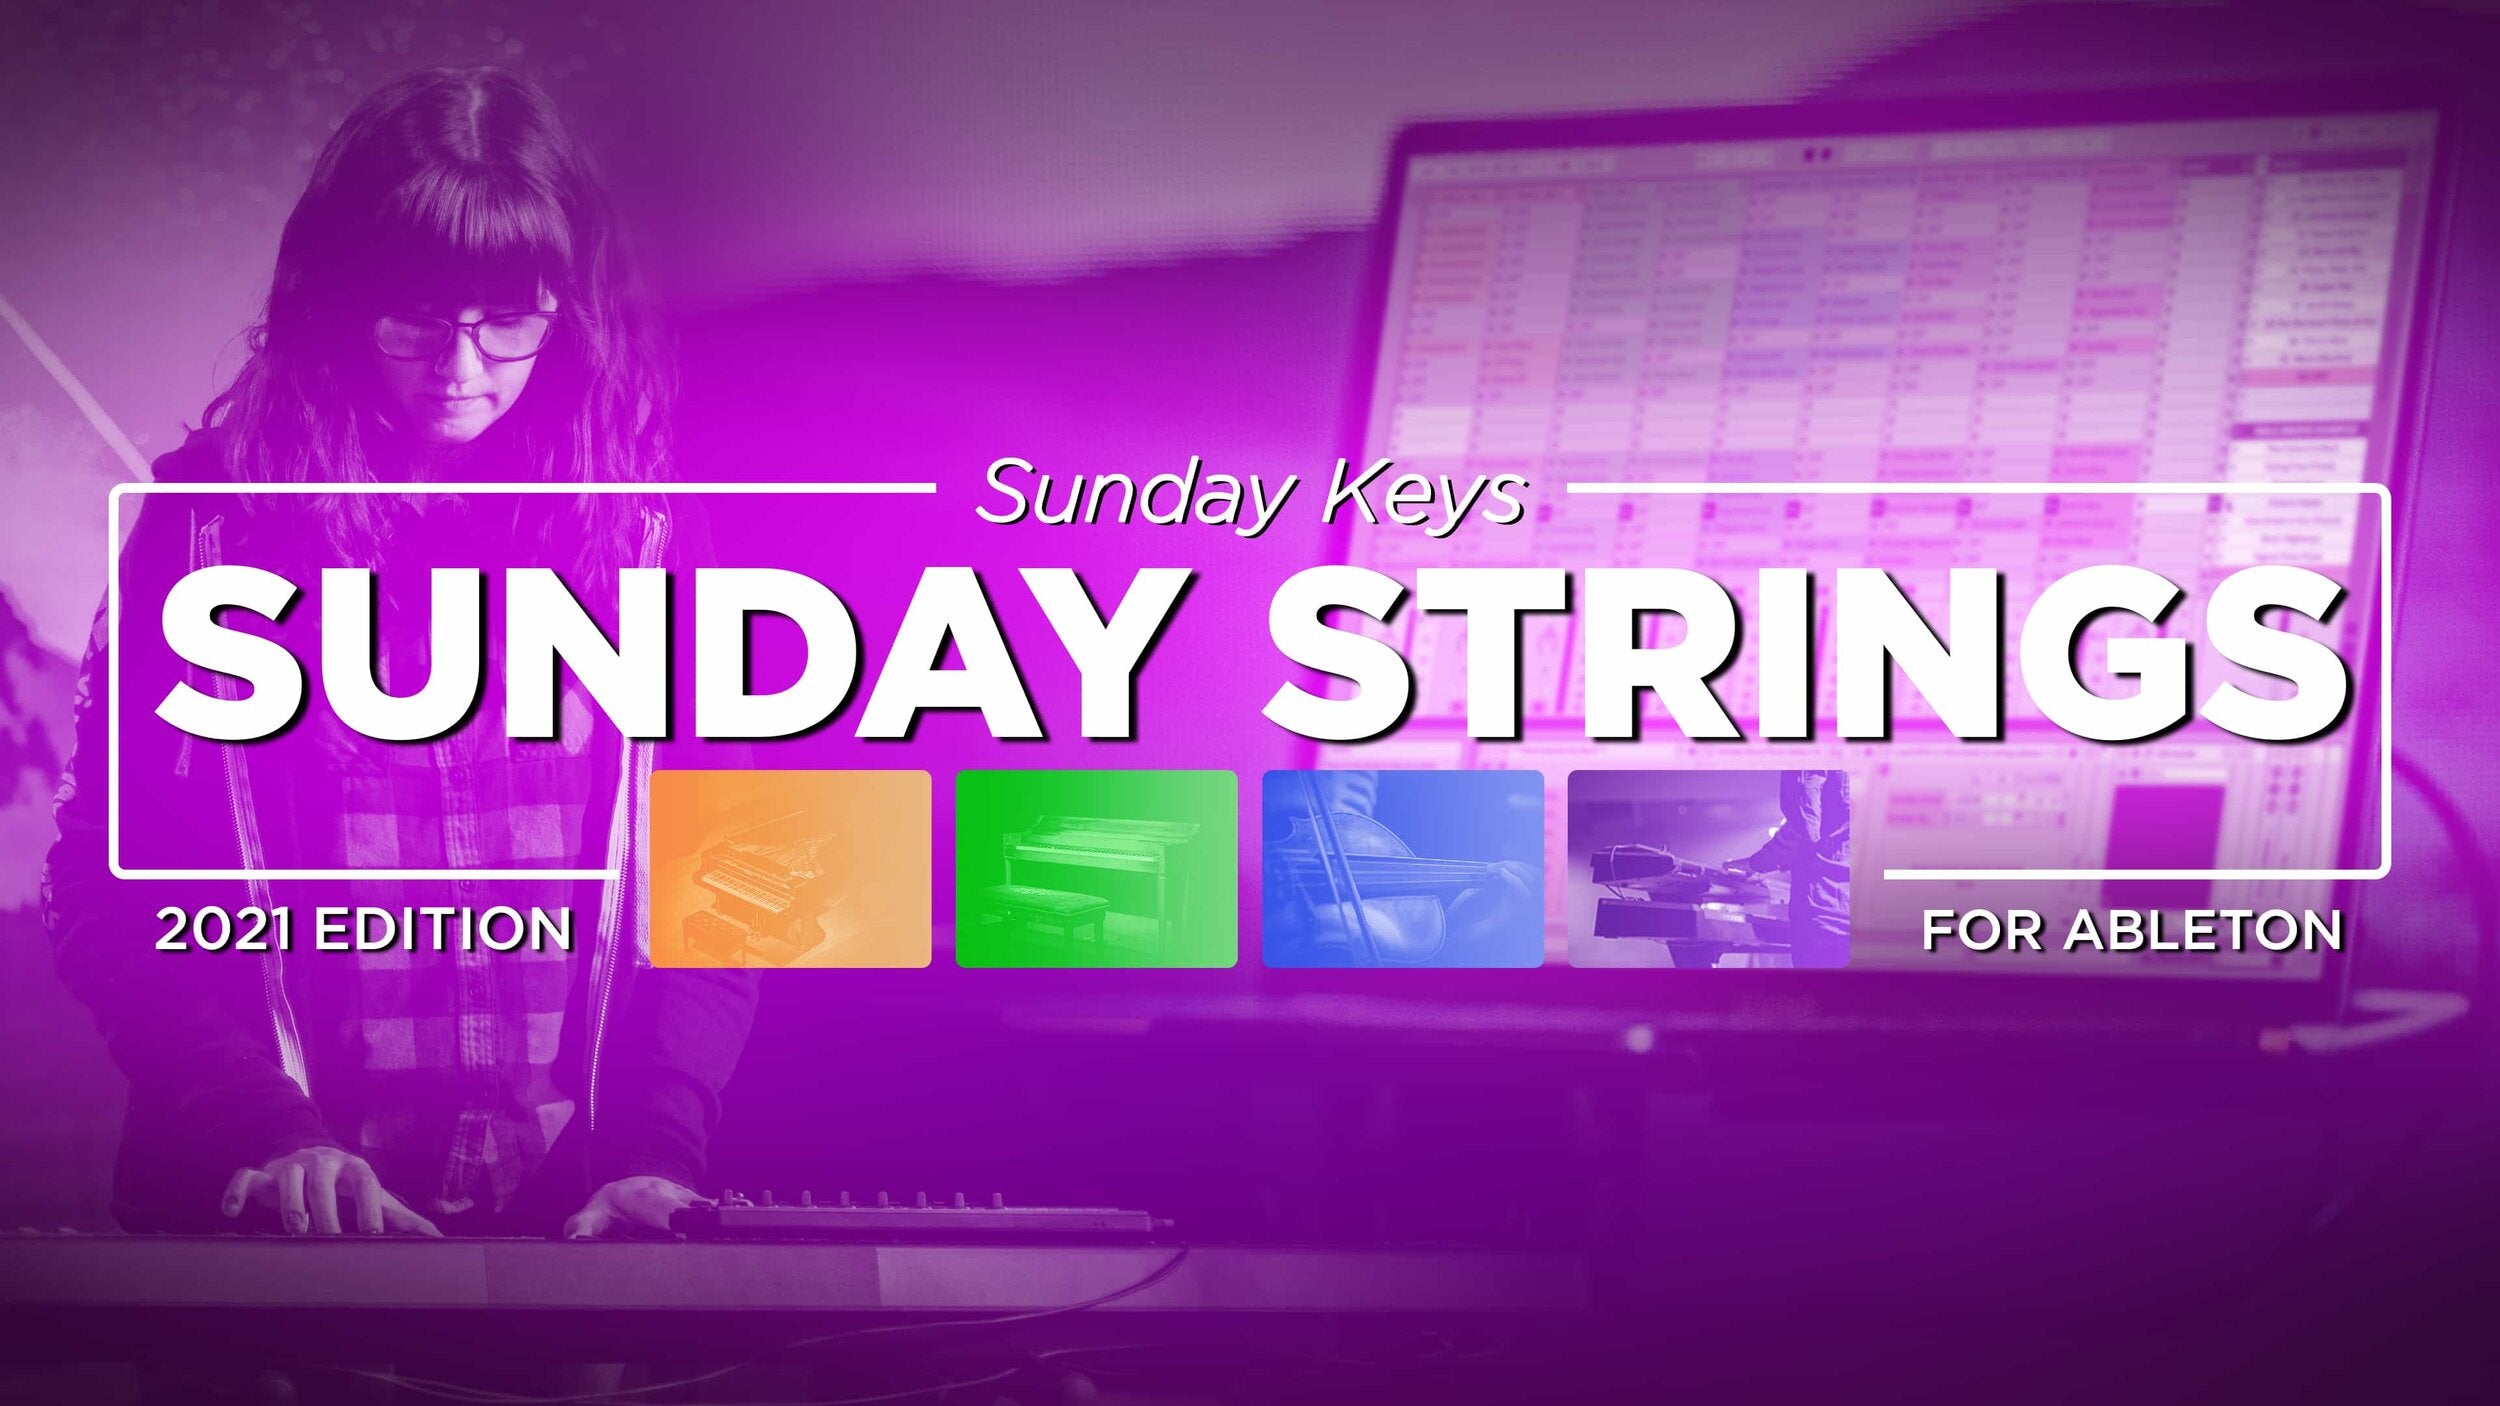 Sunday Strings: Custom-Sampled Strings for Worship - Sunday Keys for Ableton 2021